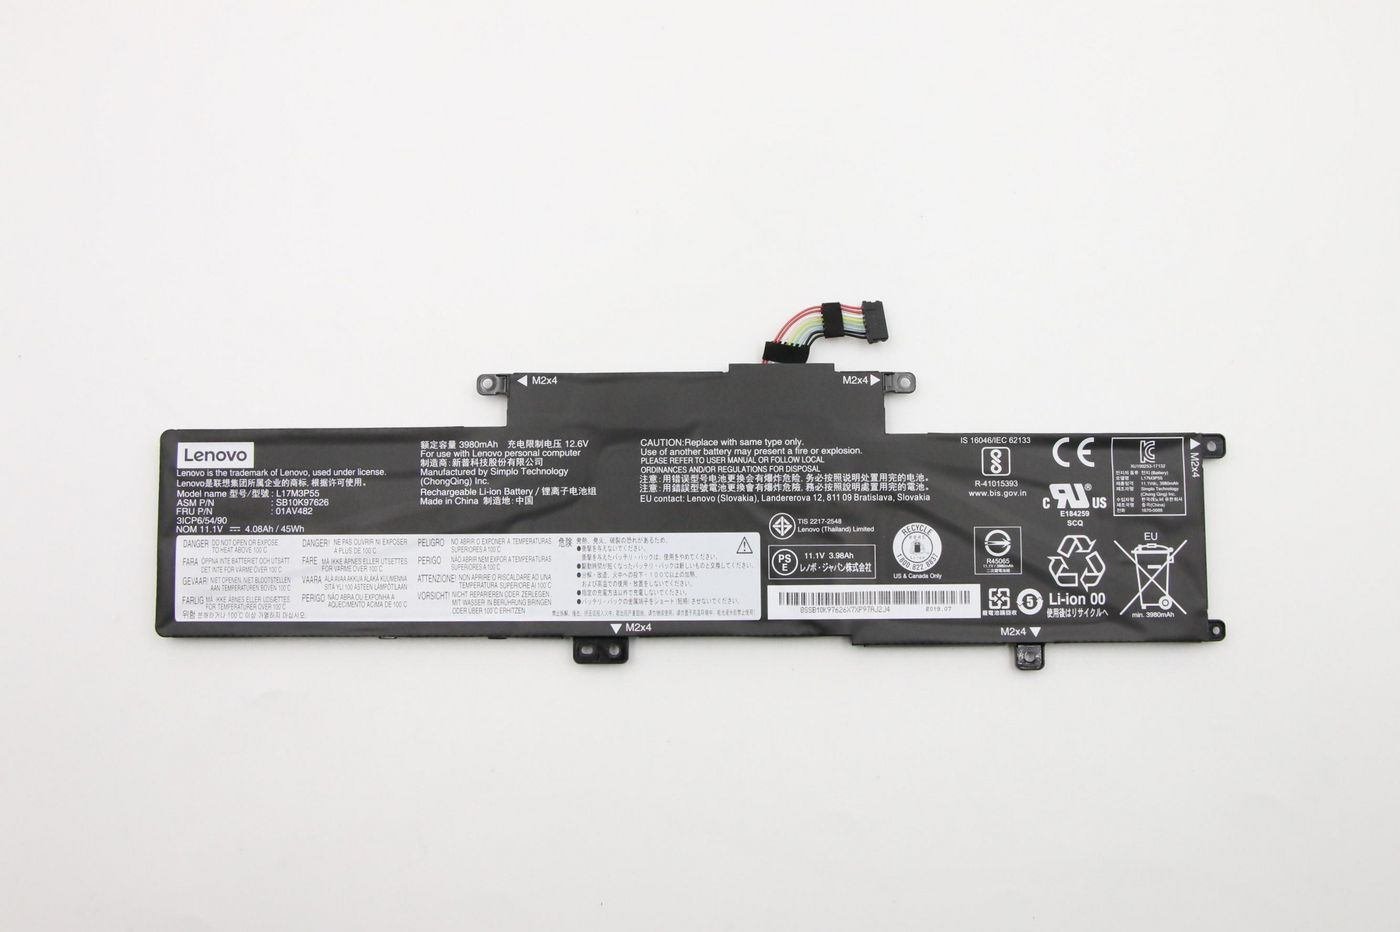 Plextor Battery Pack Li-Ion 4.05Ah - Warranty: 3M